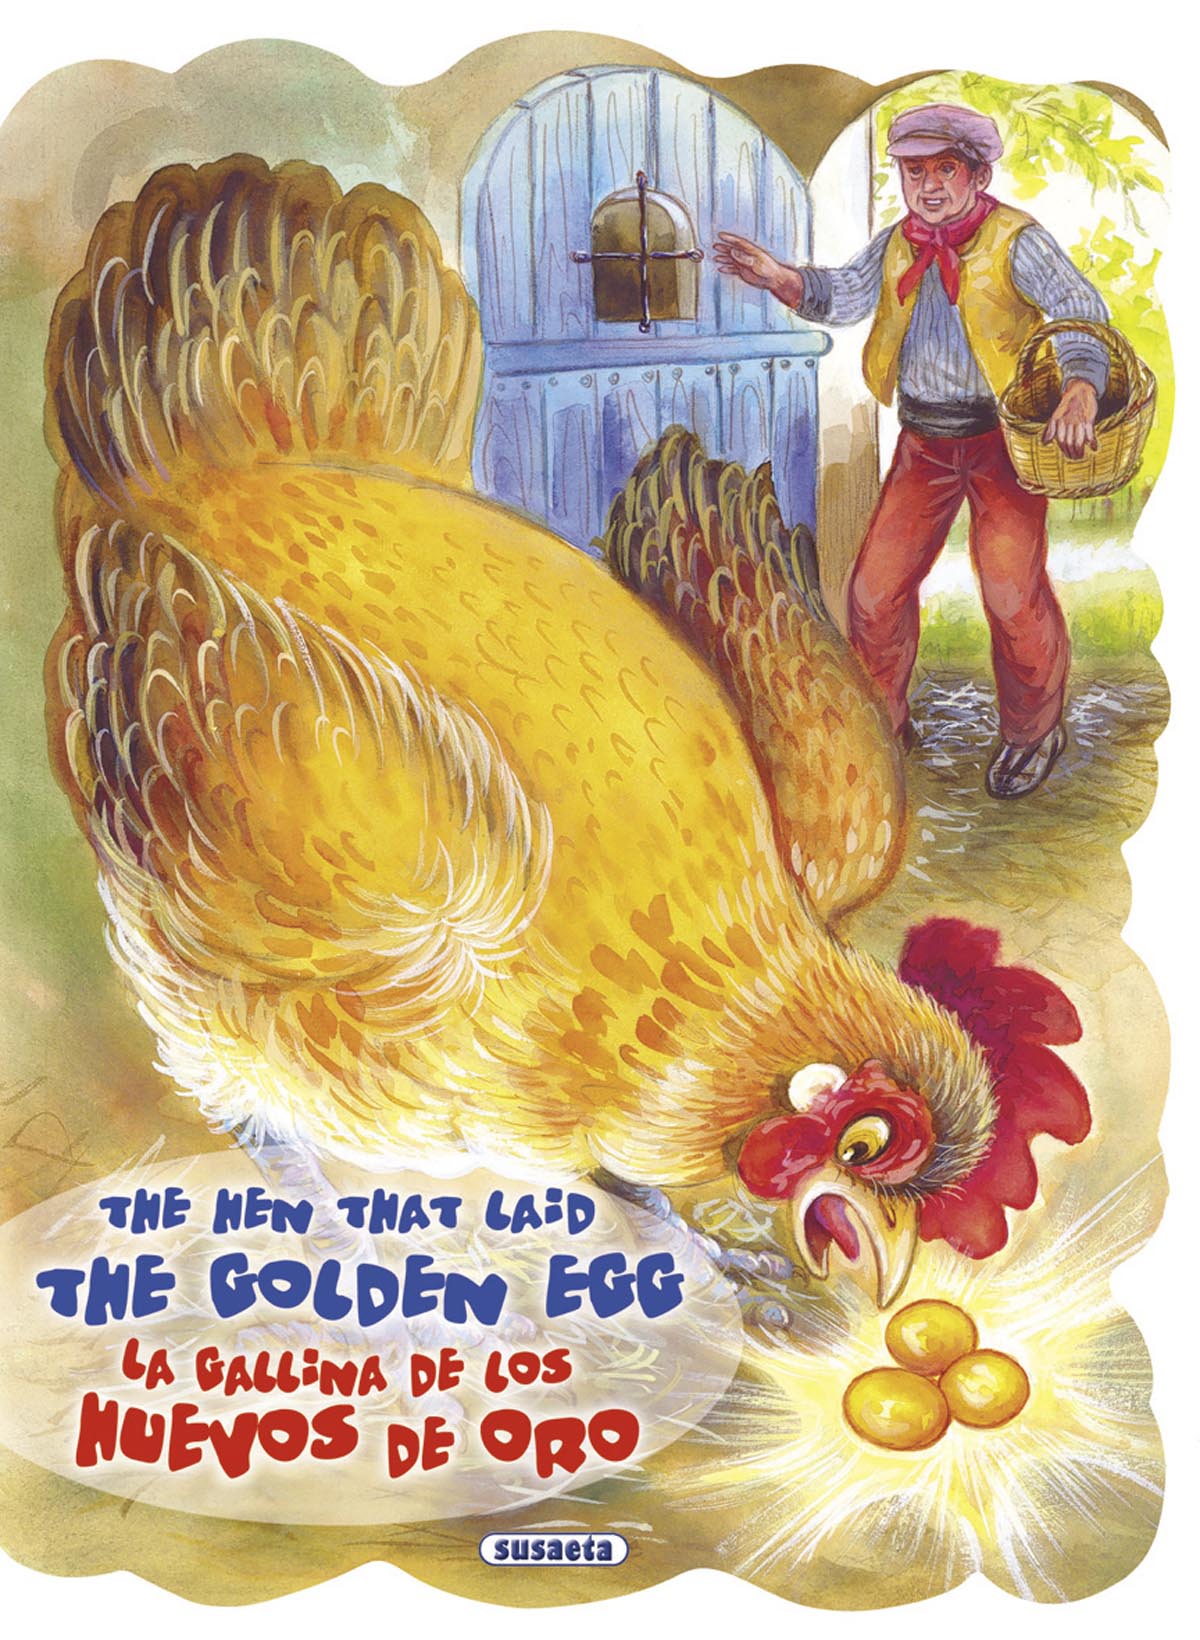 The hen that laid the golden egg - La gallina de los